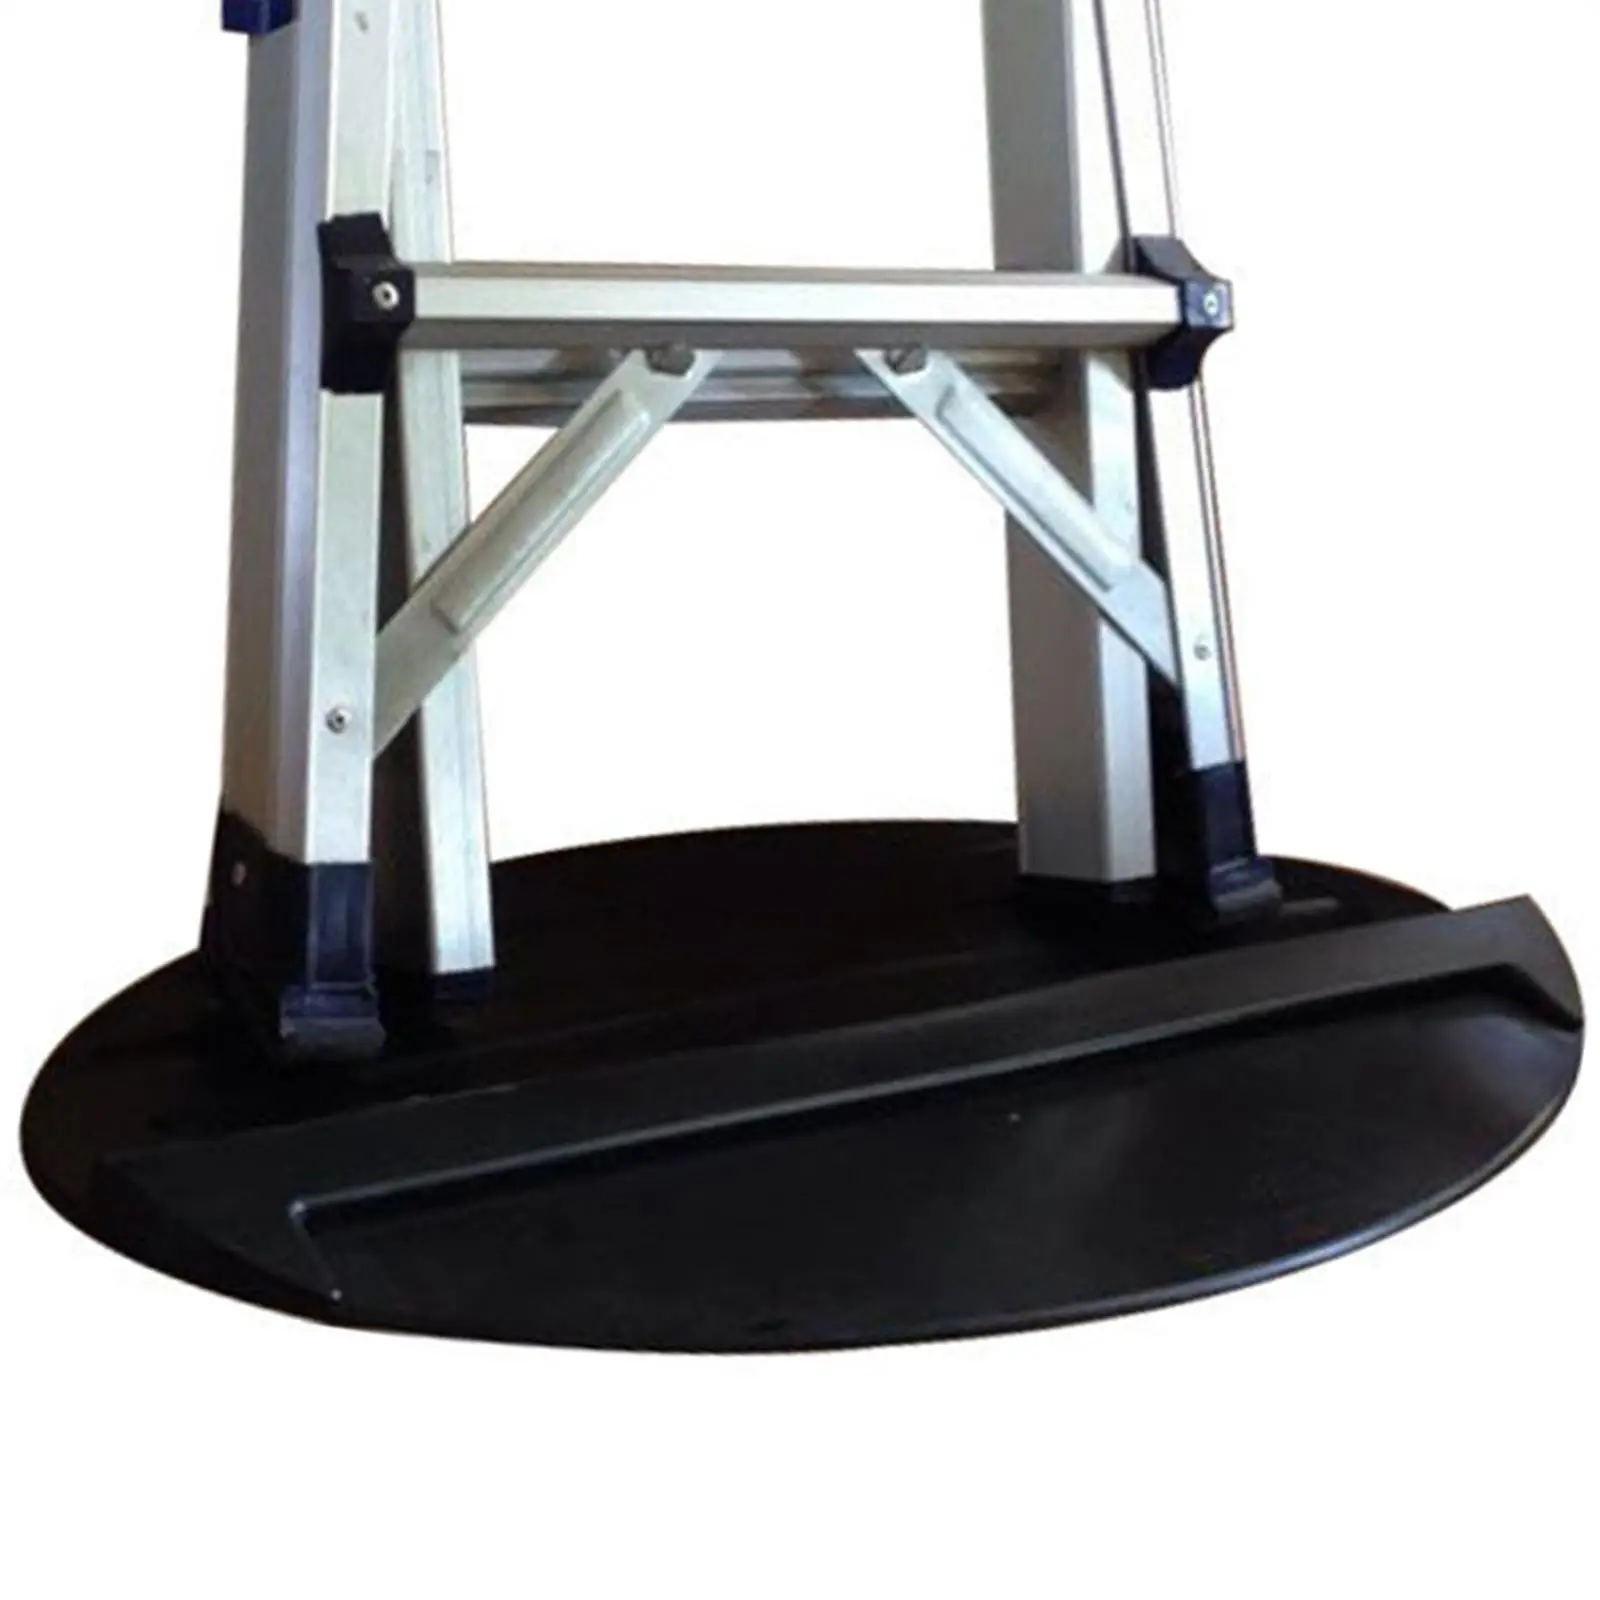 Extension Ladder Mat Non Slip Rubber Black Color Size 69x40cm Durable Sturdy